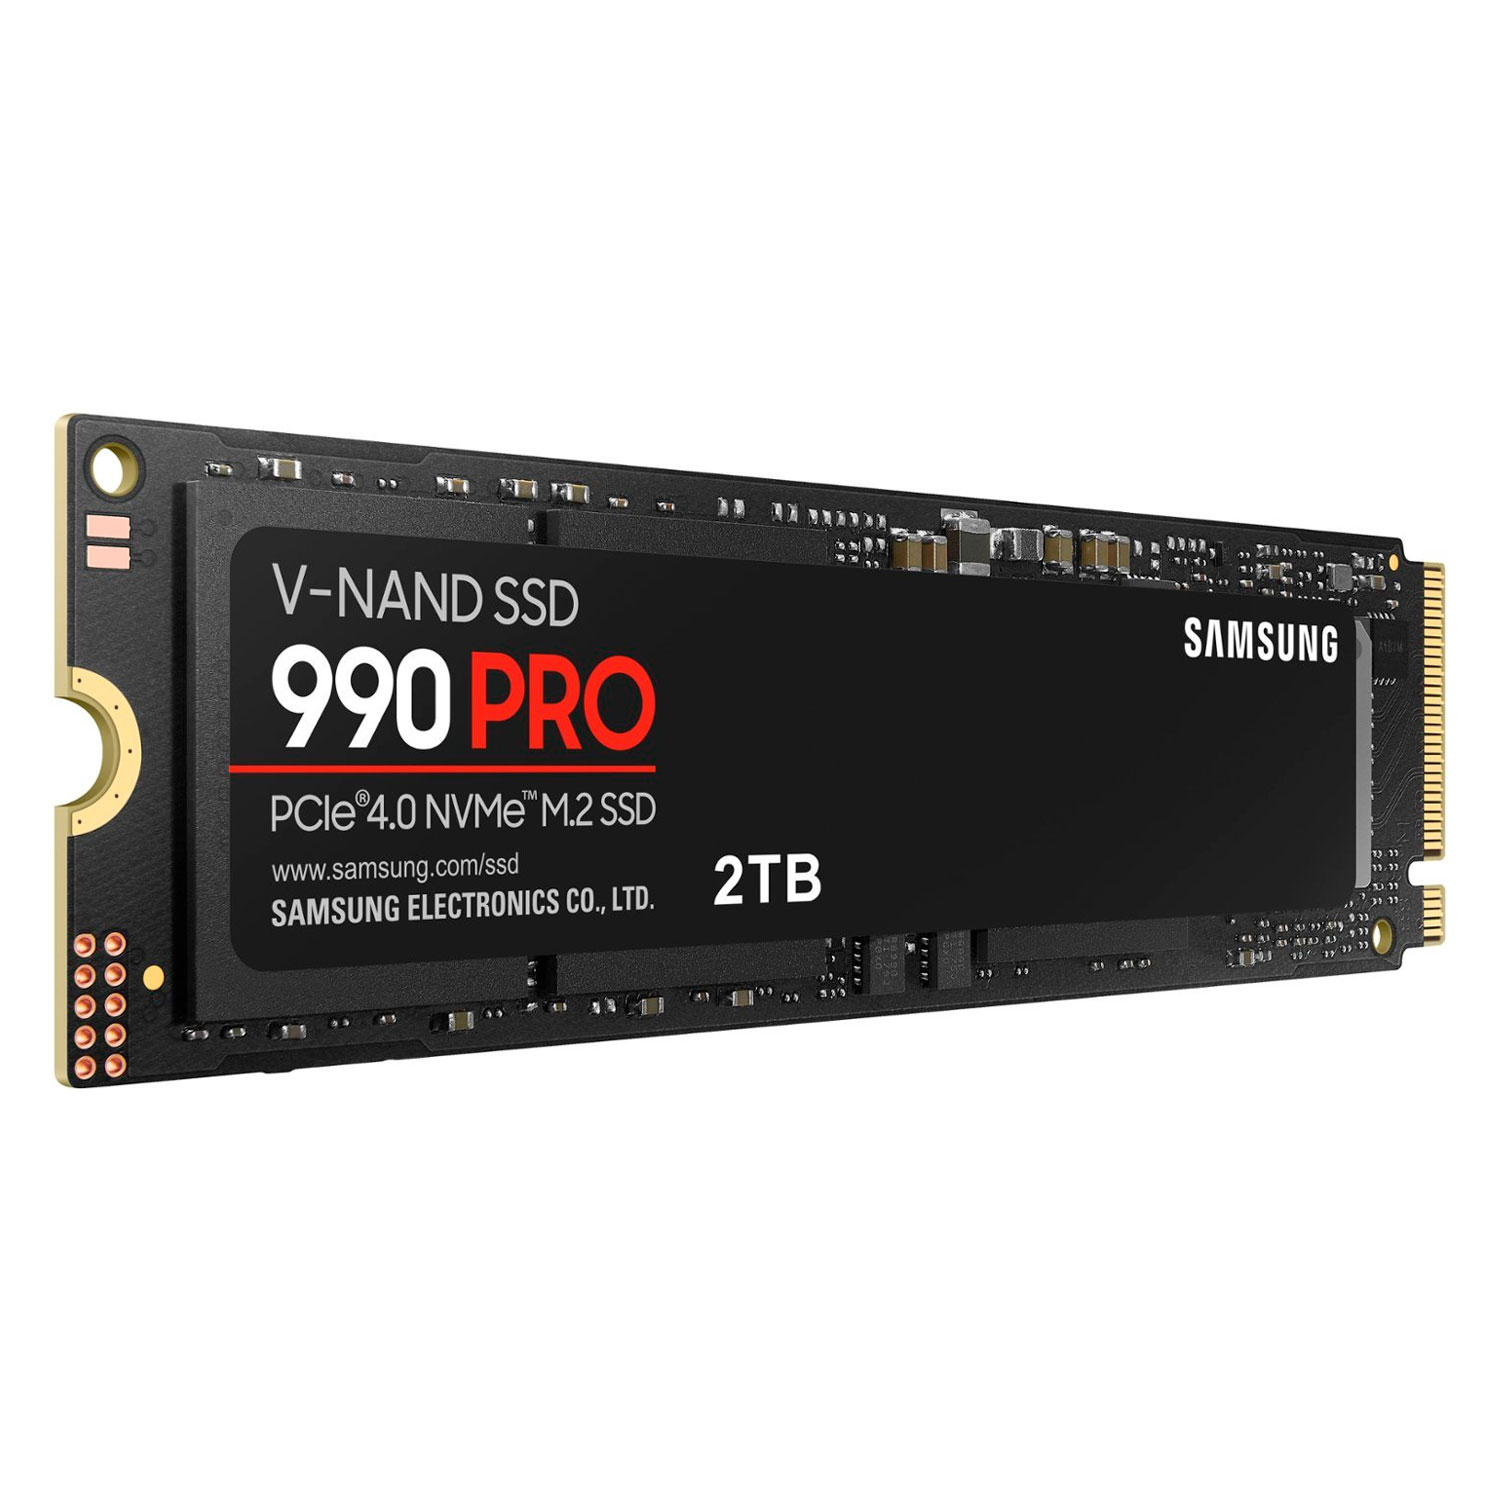 SSD M.2 Samsung 990 Pro 2TB NVMe PCIe 4.0 - MZ-V9P2T0B/AM